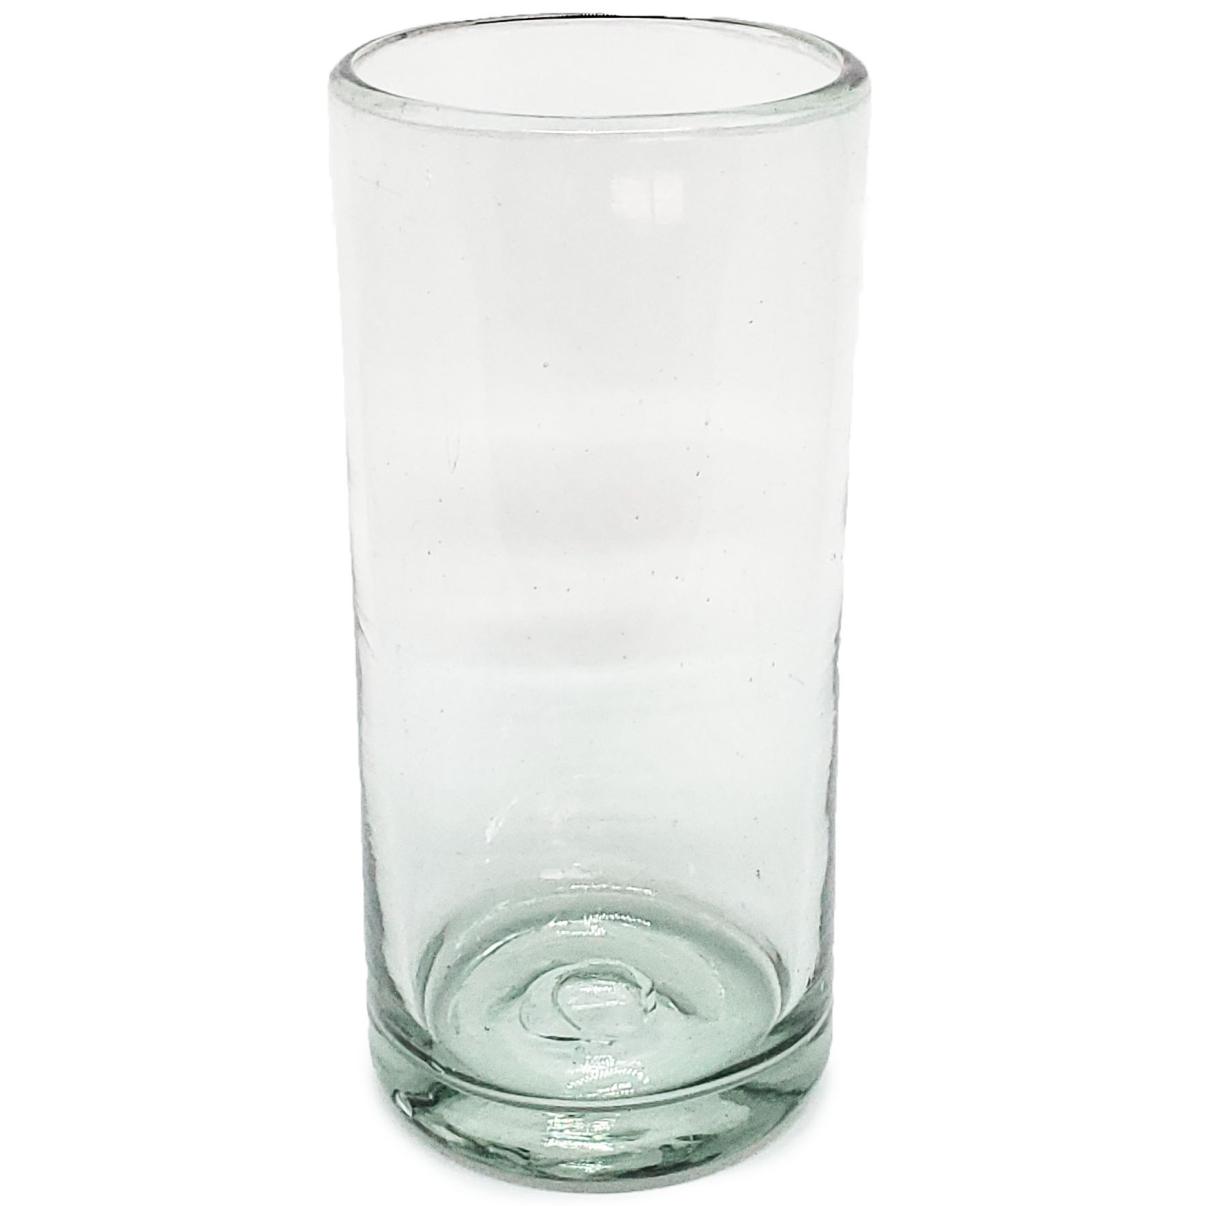 Ofertas / vasos Jumbo transparentes / Éste clásico juego de vasos jumbo está hecho con vidrio reciclado. Contiene pequeñas burbujas atrapadas en el vaso.